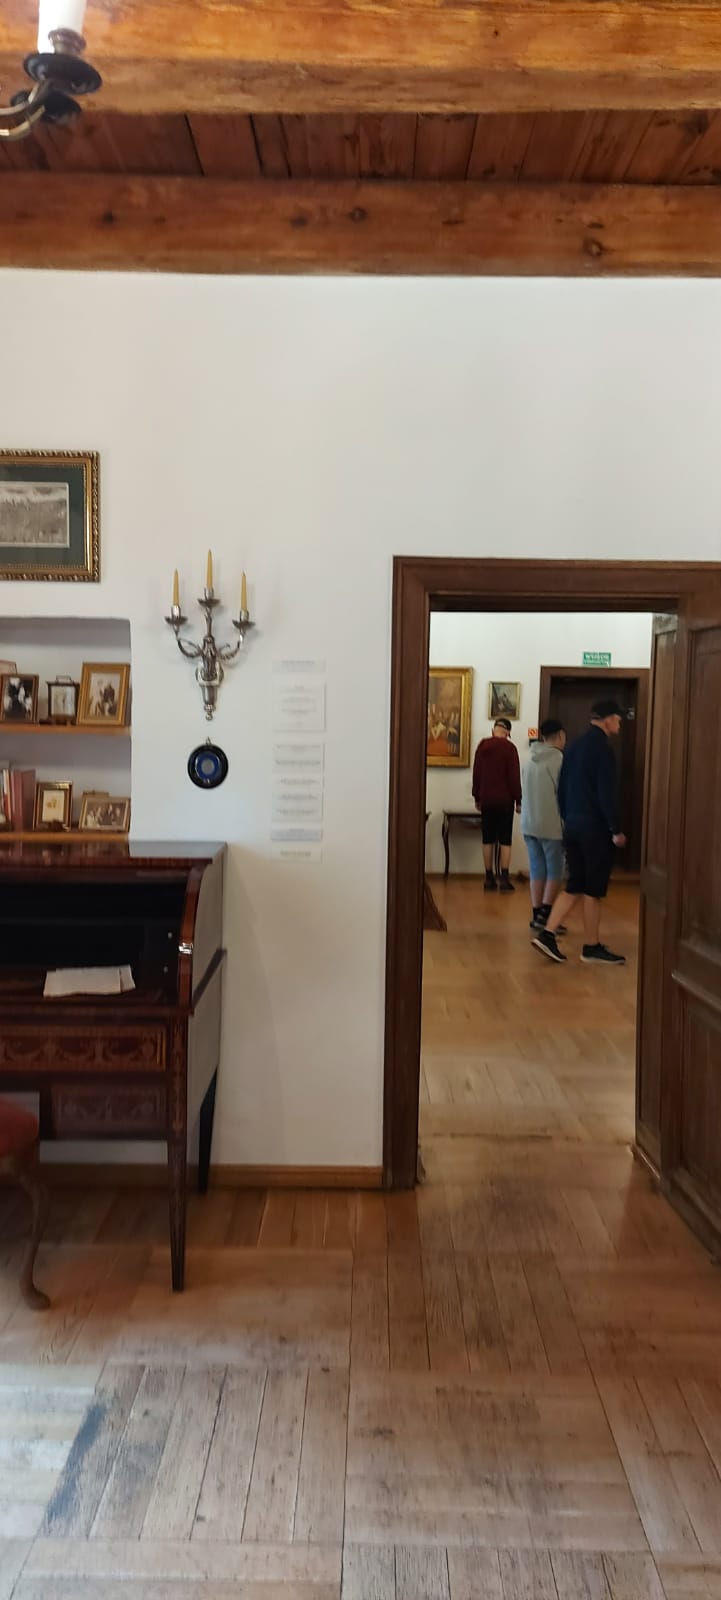 Trzech mężczyzn w pomieszczeniu Muzeum widoczni w pokoju obok.
